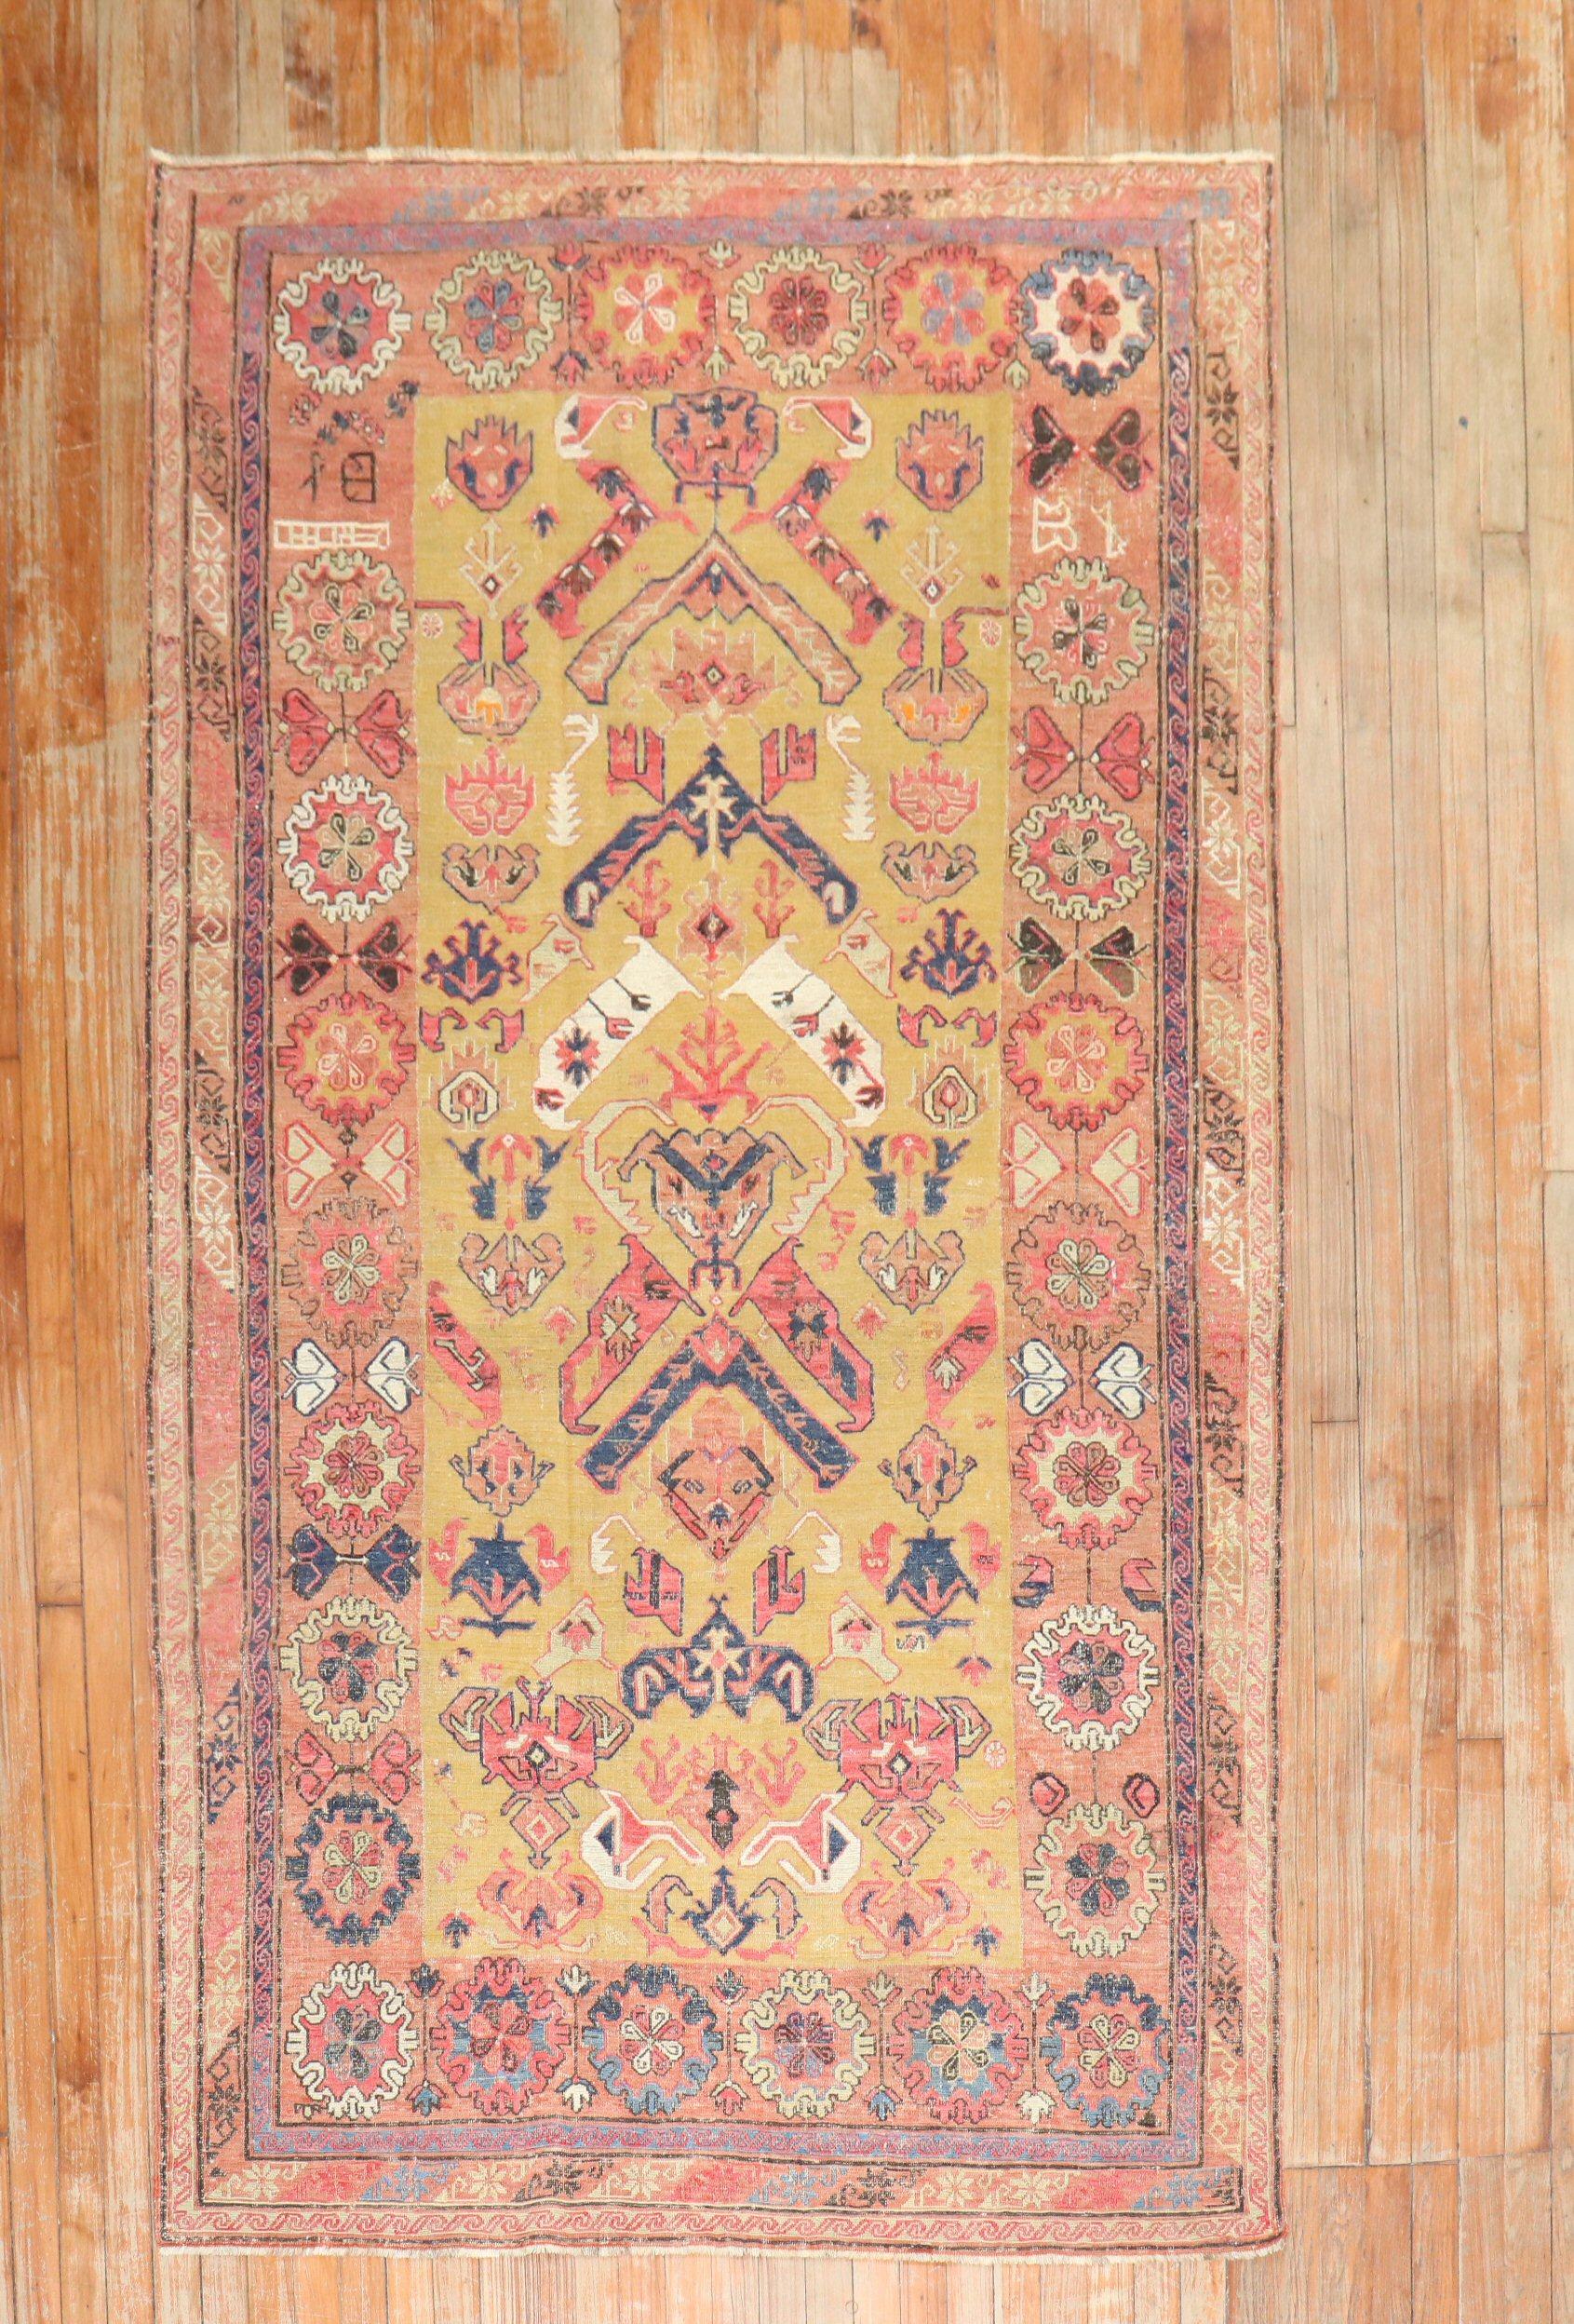 Tapis persan Soumak à tissage plat de la fin du 19e siècle, avec un motif géométrique tribal all-over en couleurs rustiques sur un champ d'or habituel

Mesures : 7' x 10'.